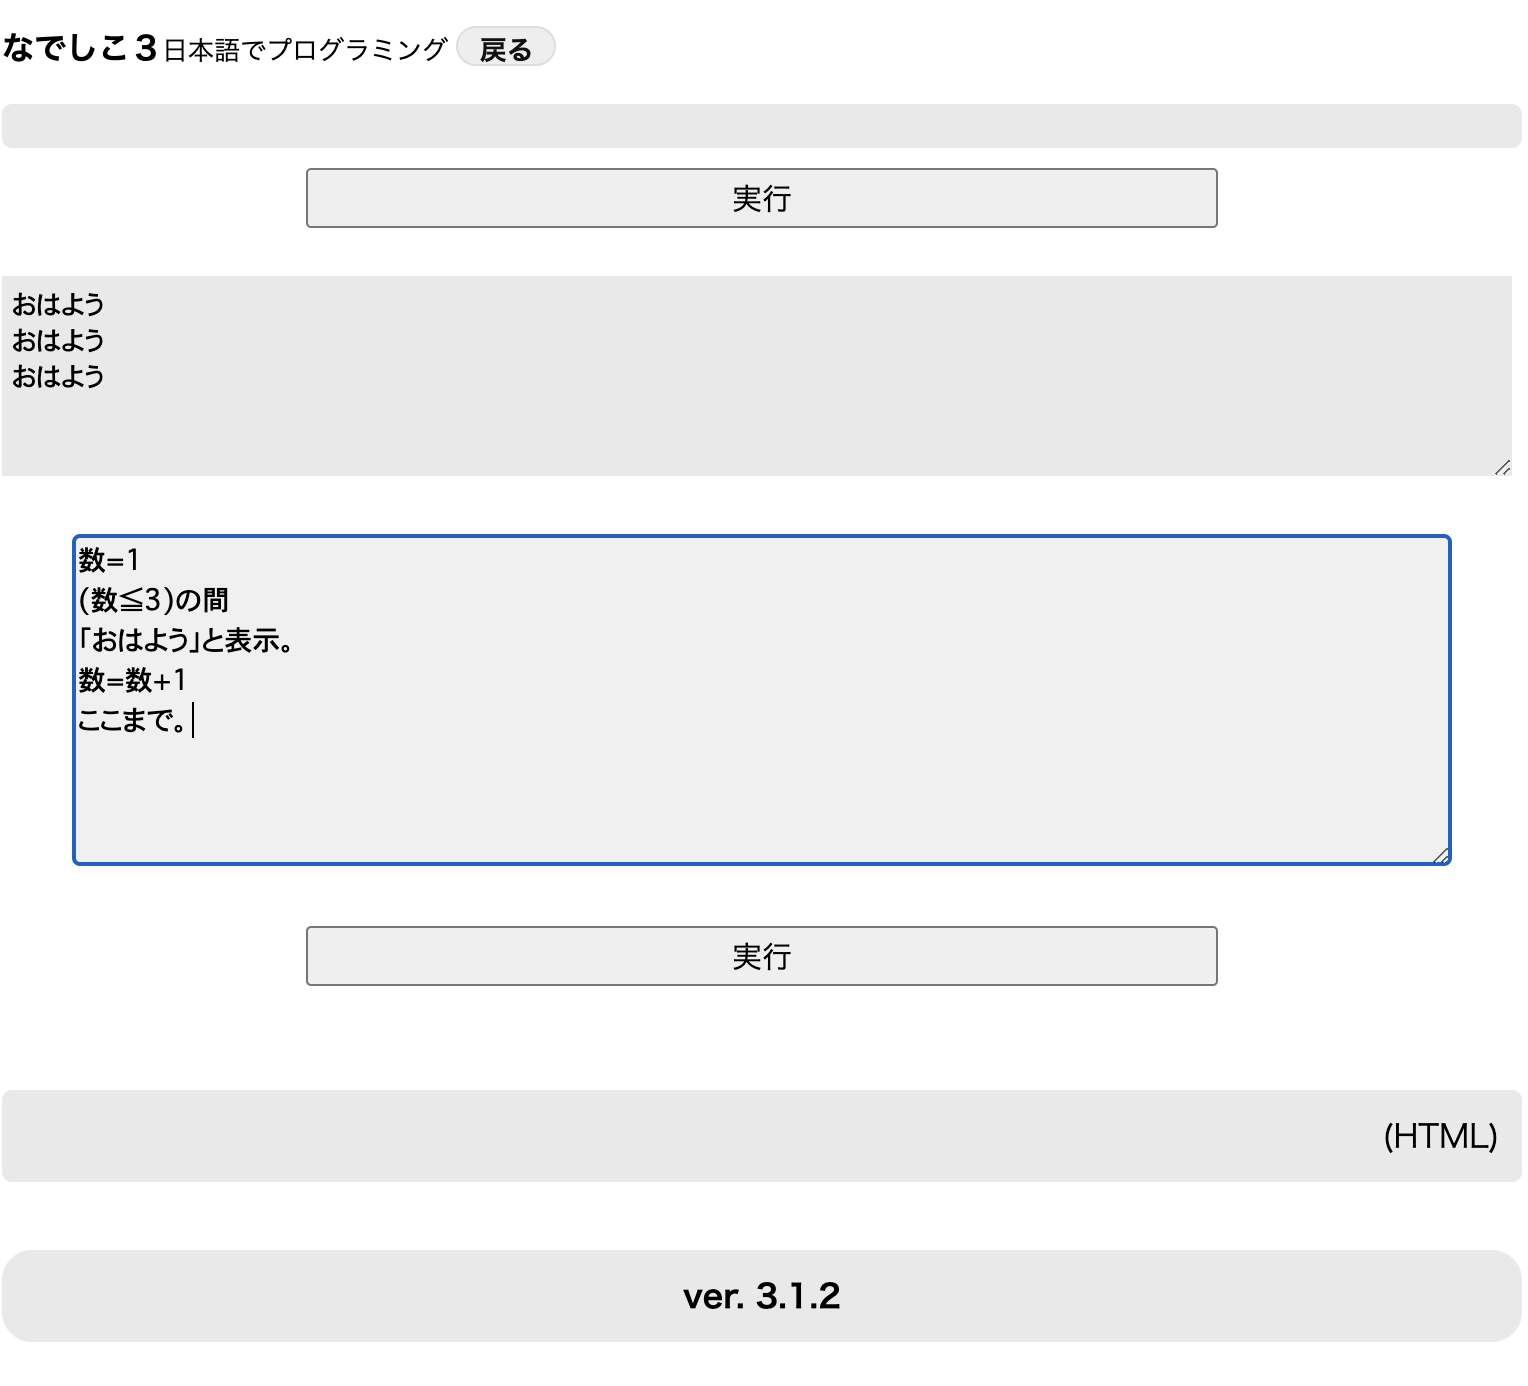 日本語プログラミング言語 なでしこ でグラフを表示してみる